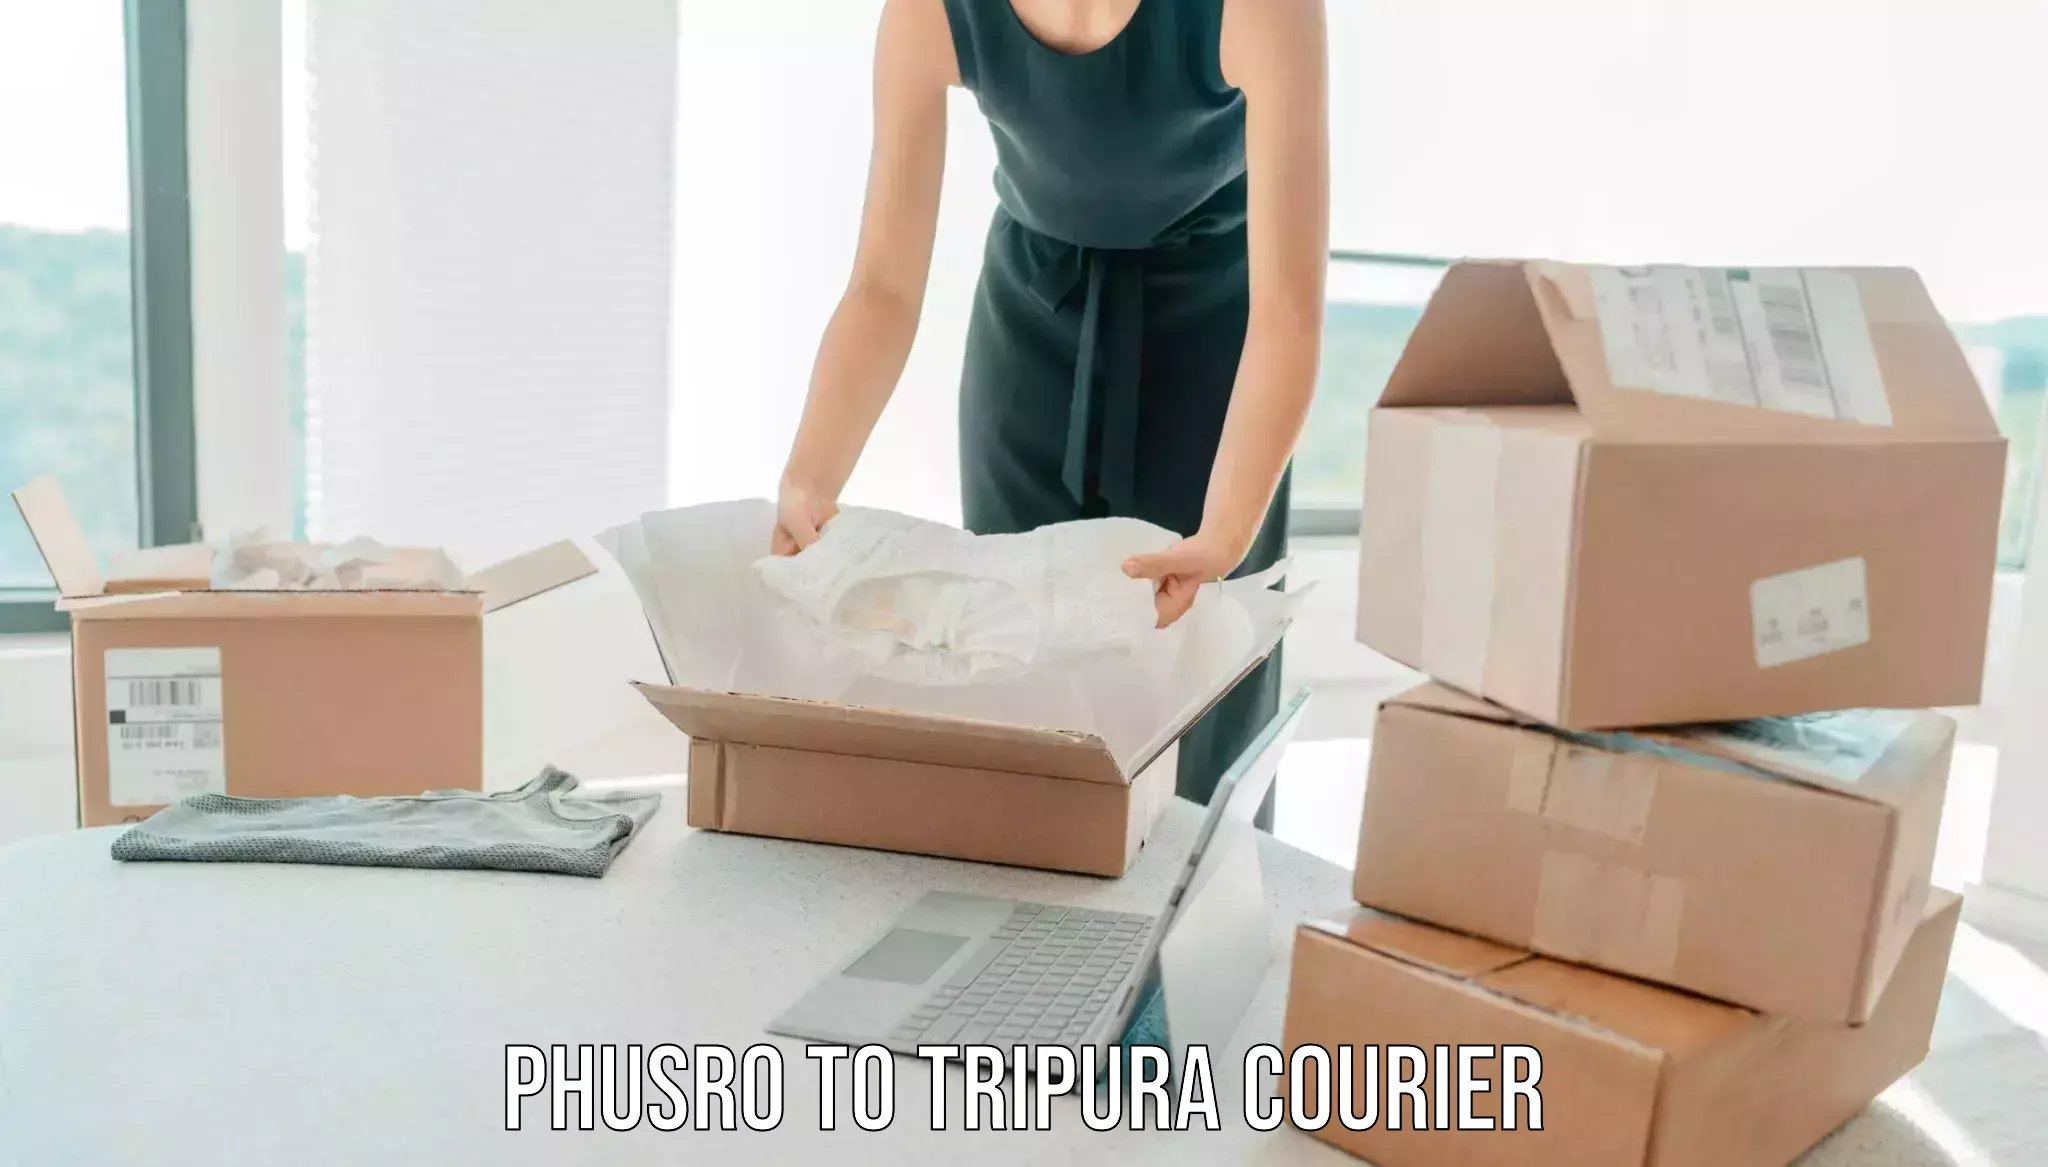 Household moving experts Phusro to Tripura